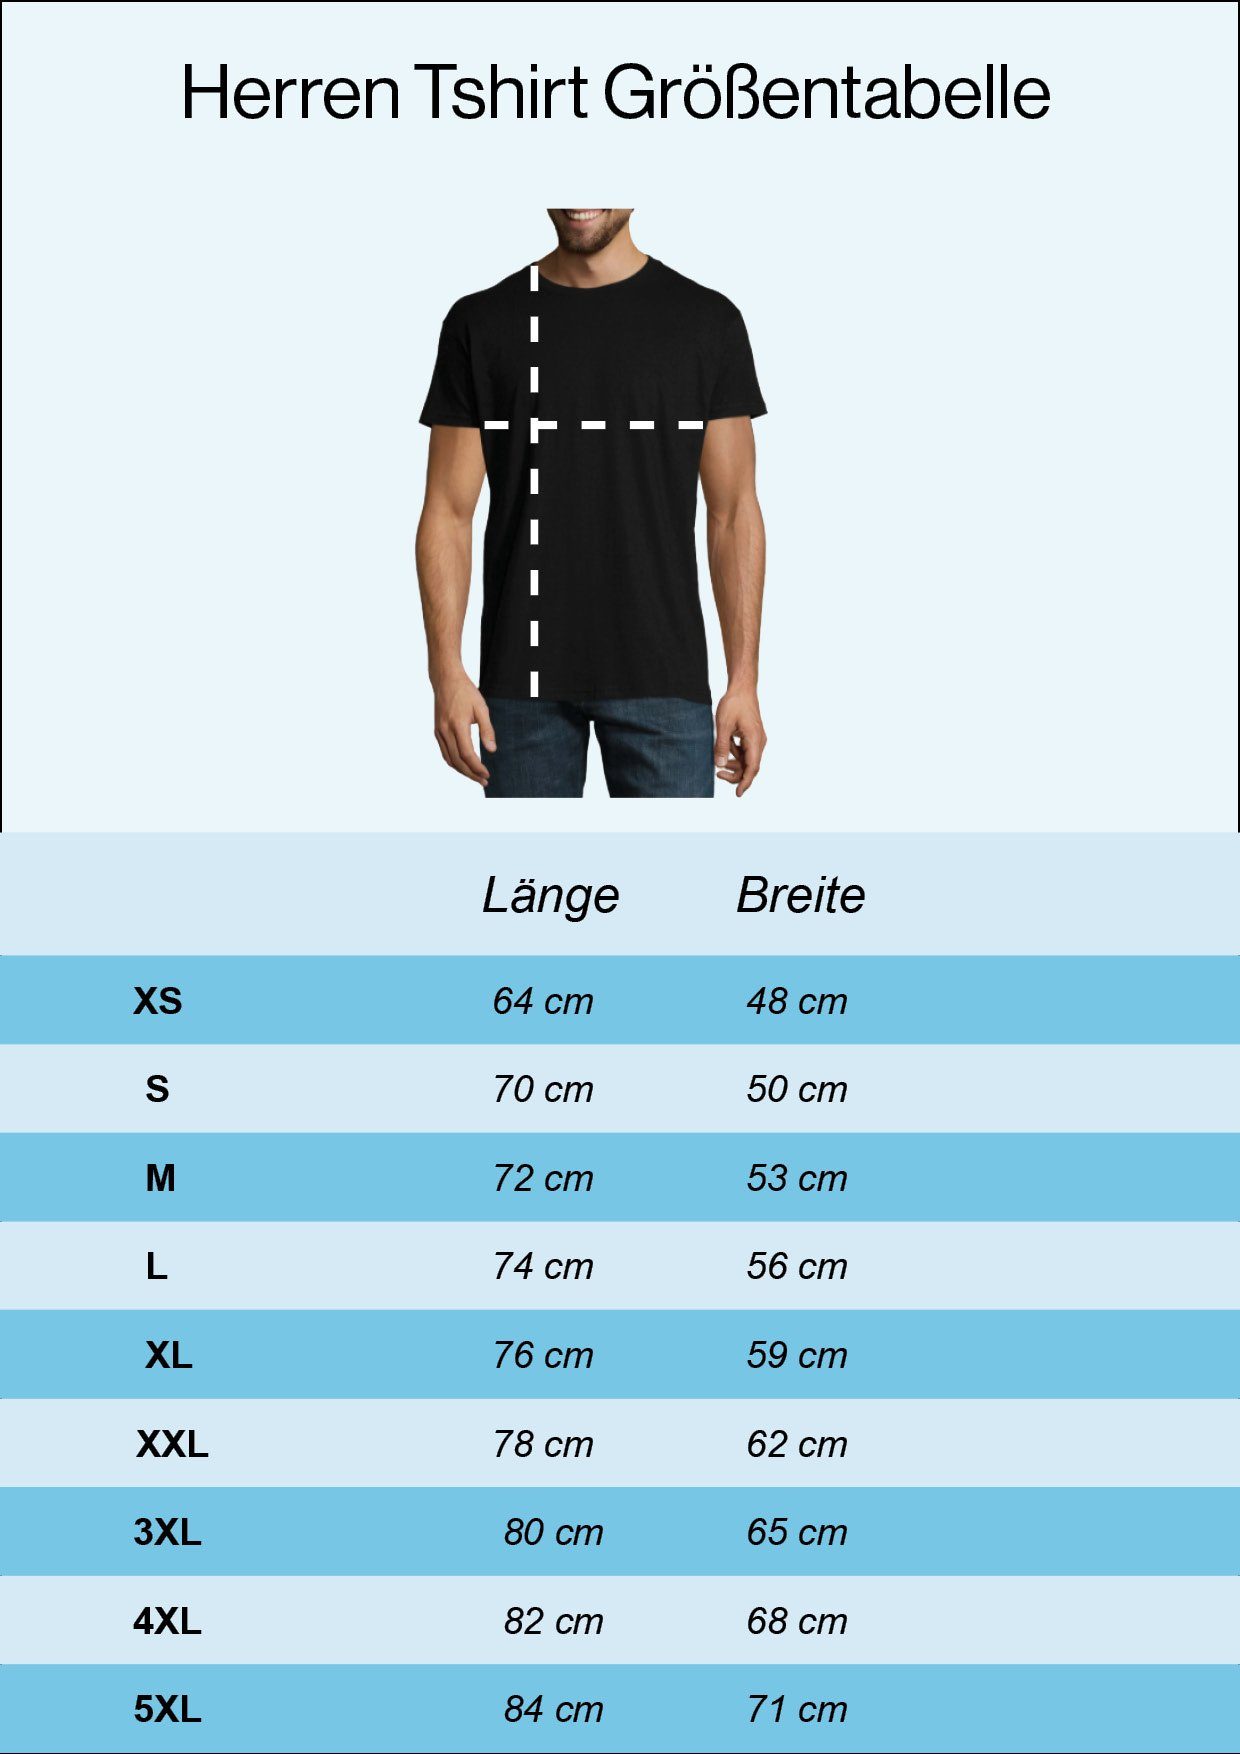 Das T-Shirt Youth Burgund Ist Chrom mit trendigem Frontprint Designz Shirt Biker